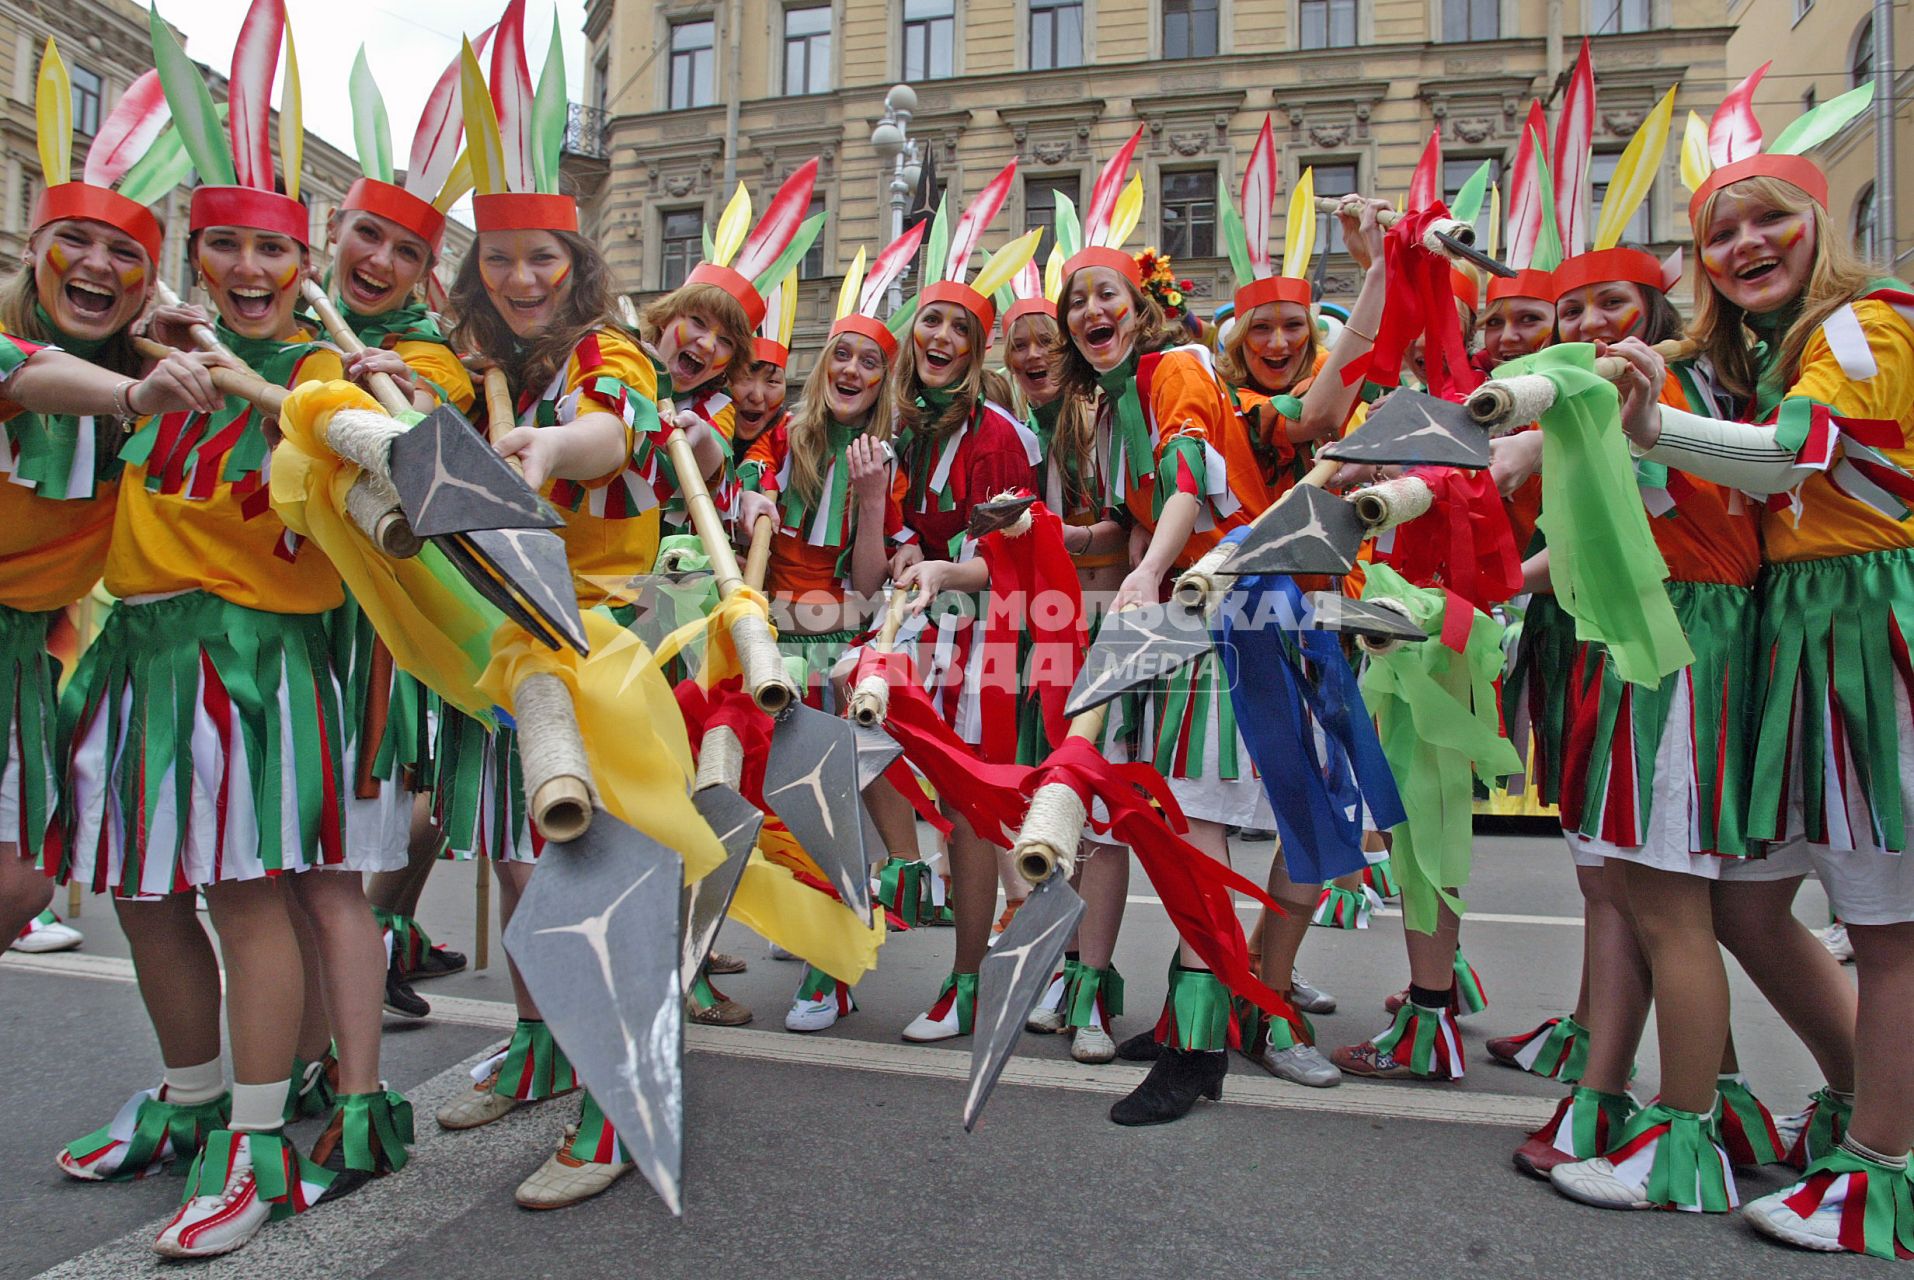 ежегодный санкт-петербургский карнавал в честь дня города
27.05.2006